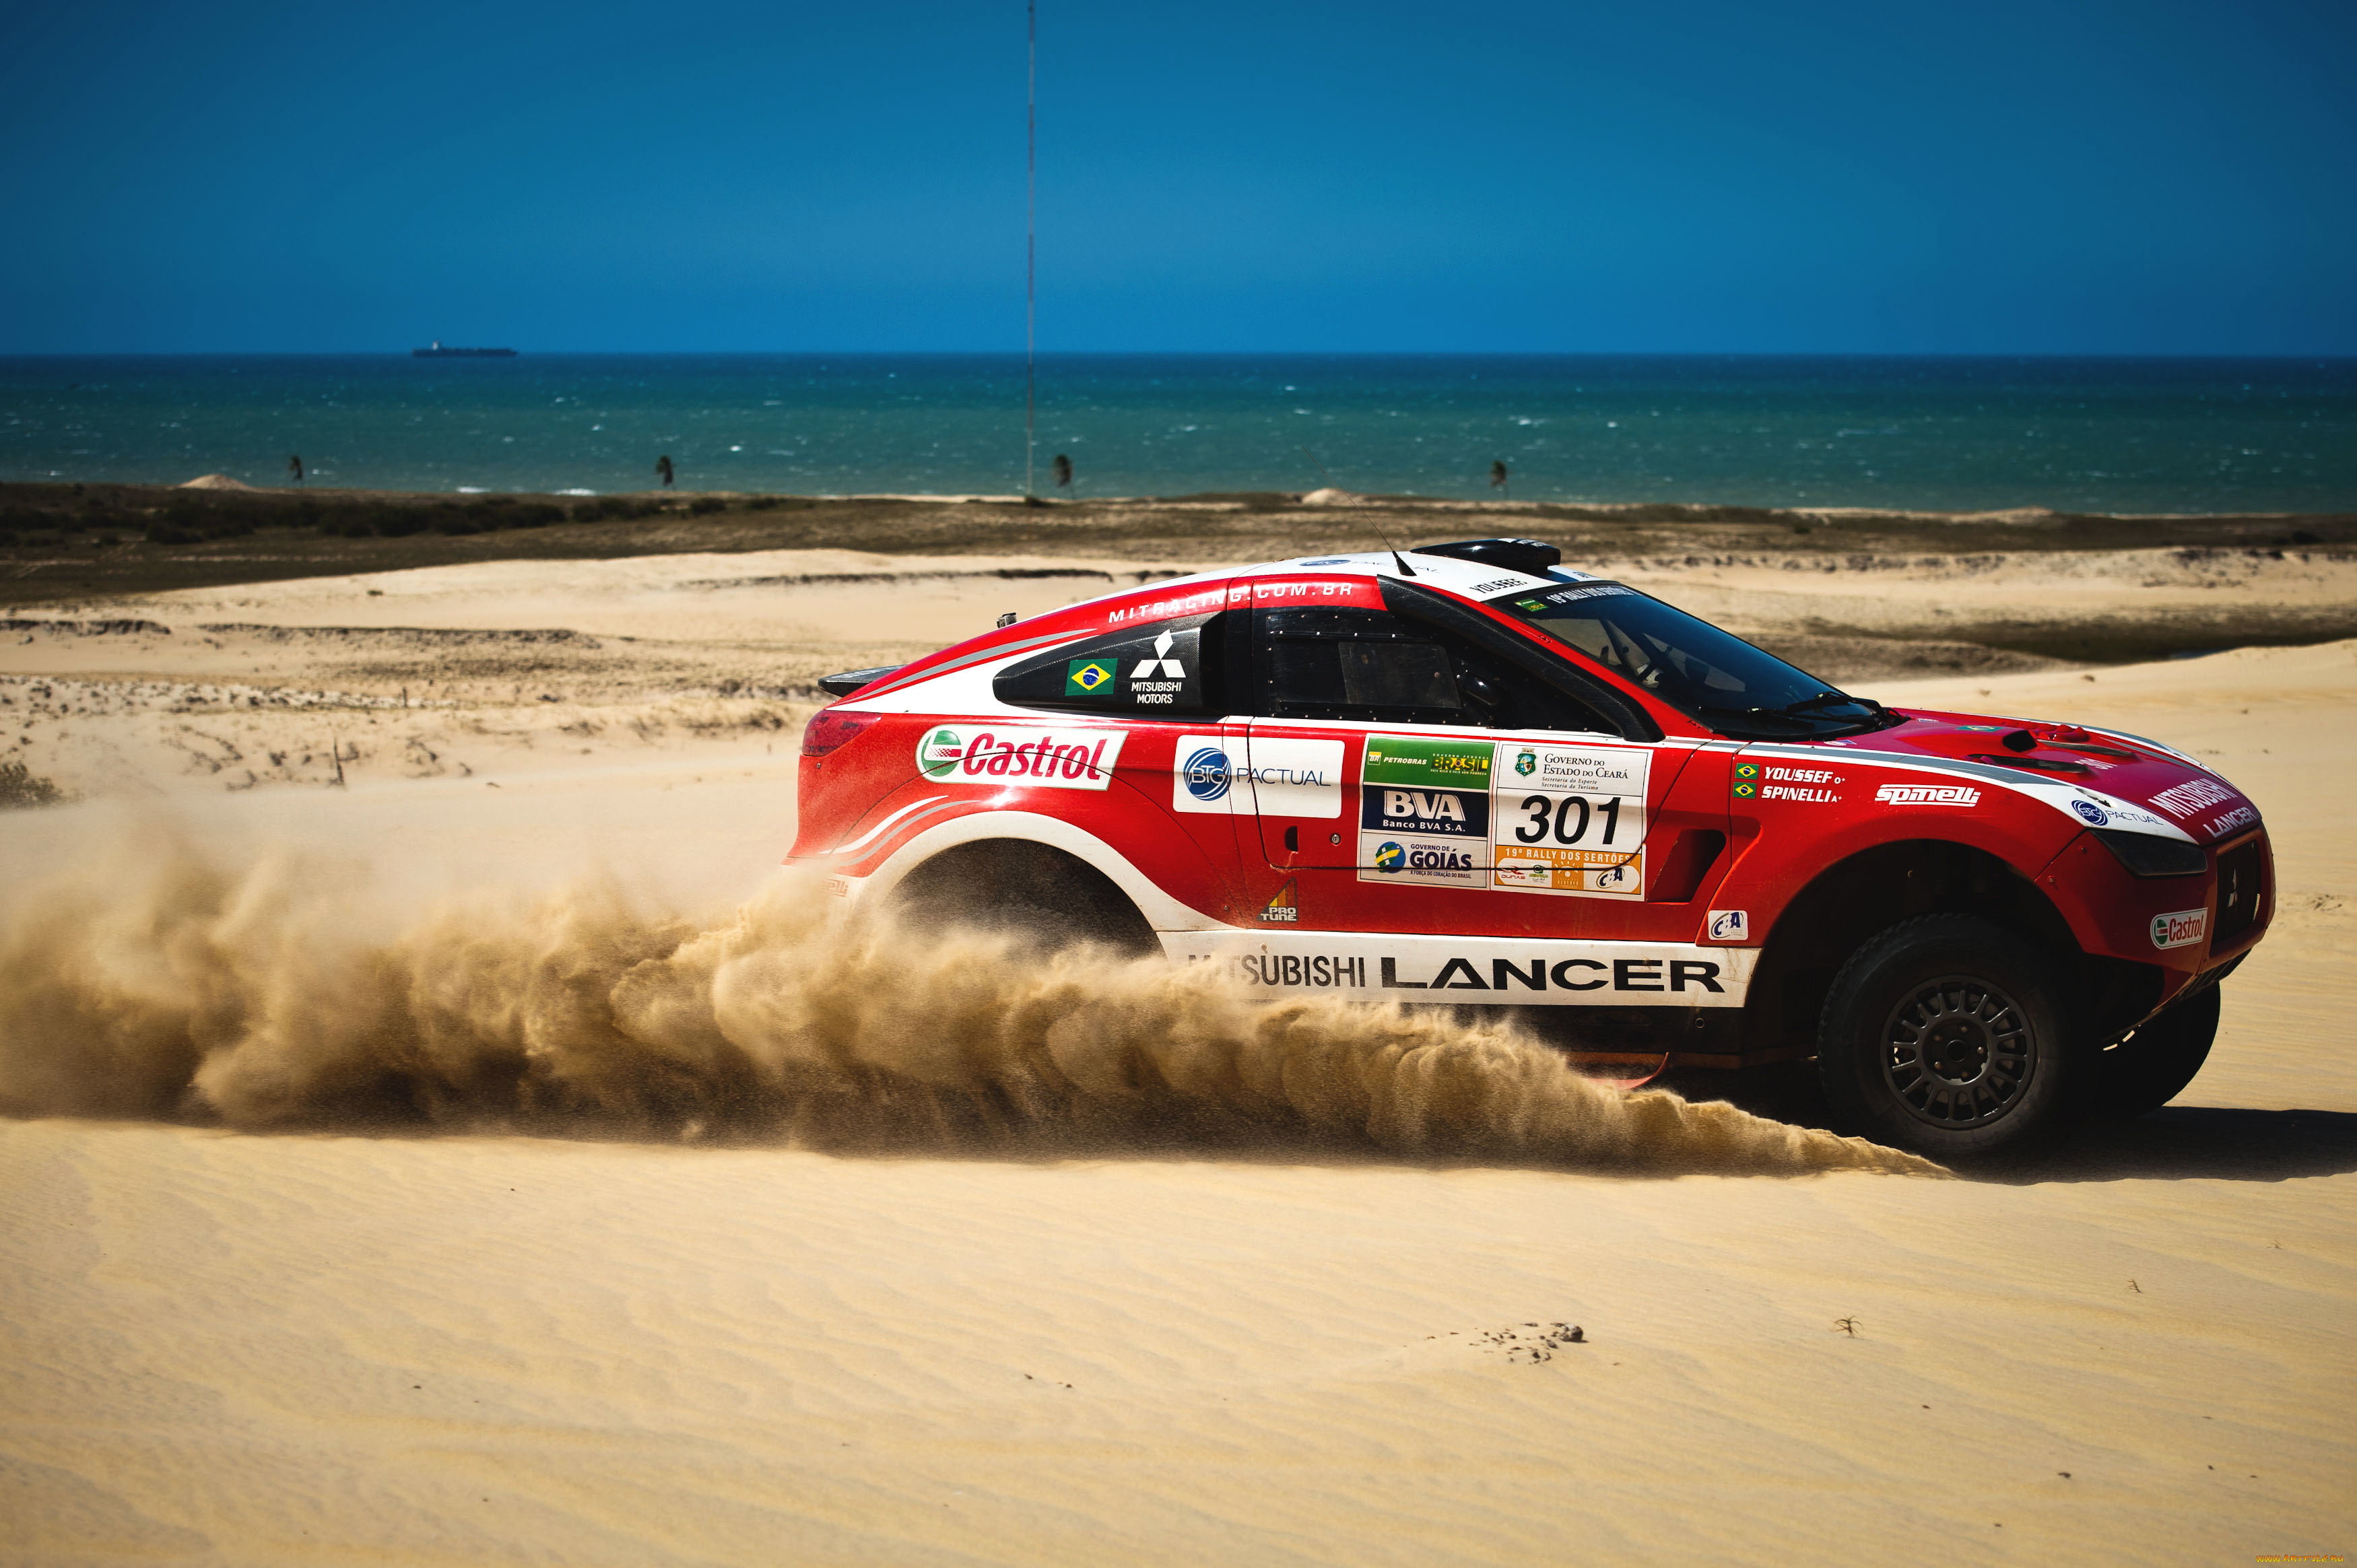 Ралли пустыня песок авто Rally desert sand auto загрузить